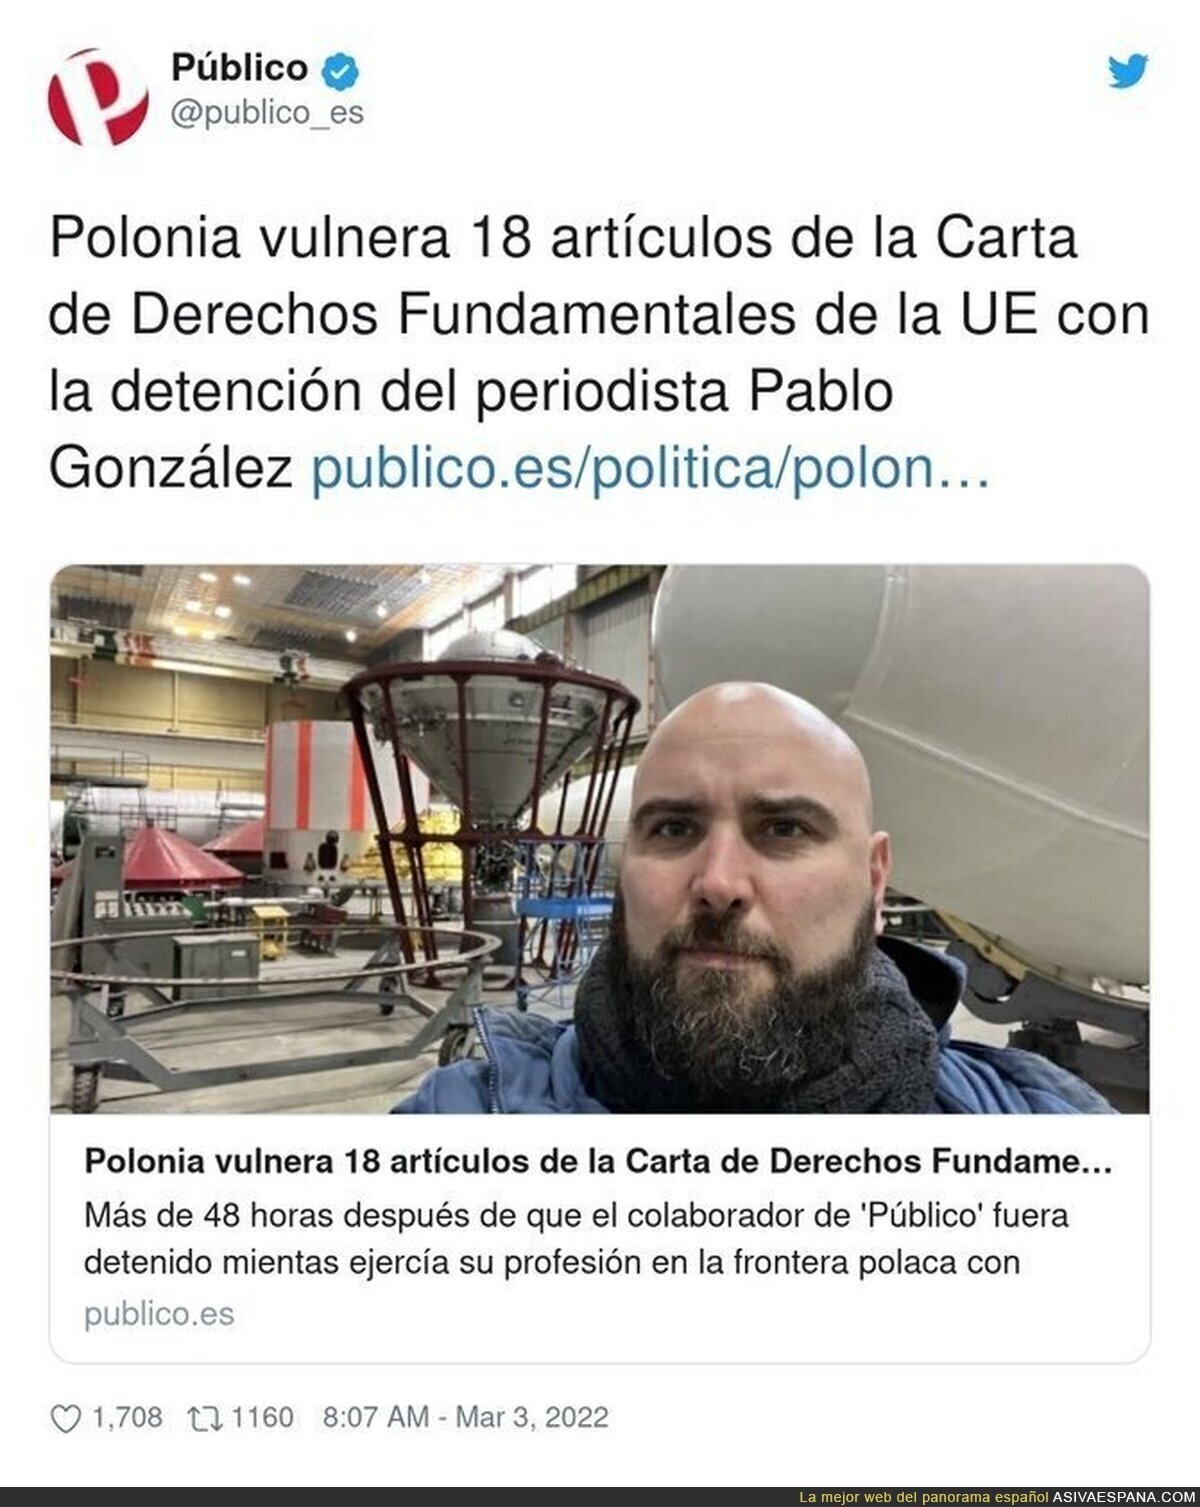 Y la gran mayoría de periodistas en España ni se ha manifestado por esta ilegalidad hacia un compañero suyo